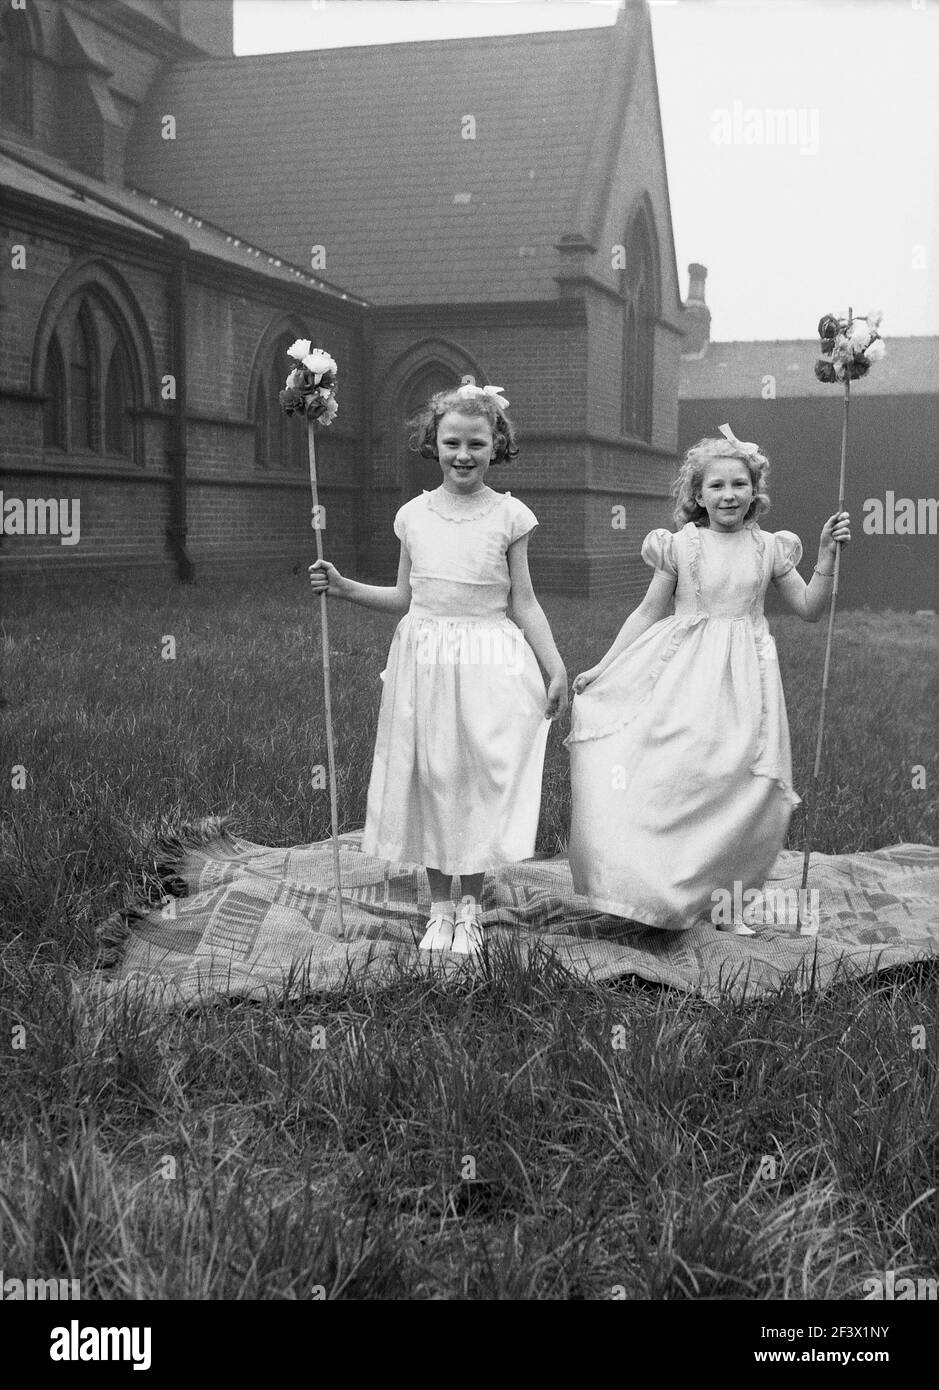 1958, historique, printemps et deux jeunes filles dans leurs costumes et tenant des bâtons de fleurs debout sur un tapis dans le terrain d'une église pour leur photo, avant de prendre part à la parade et au festival du jour de mai, Leeds, Angleterre, Royaume-Uni. Banque D'Images